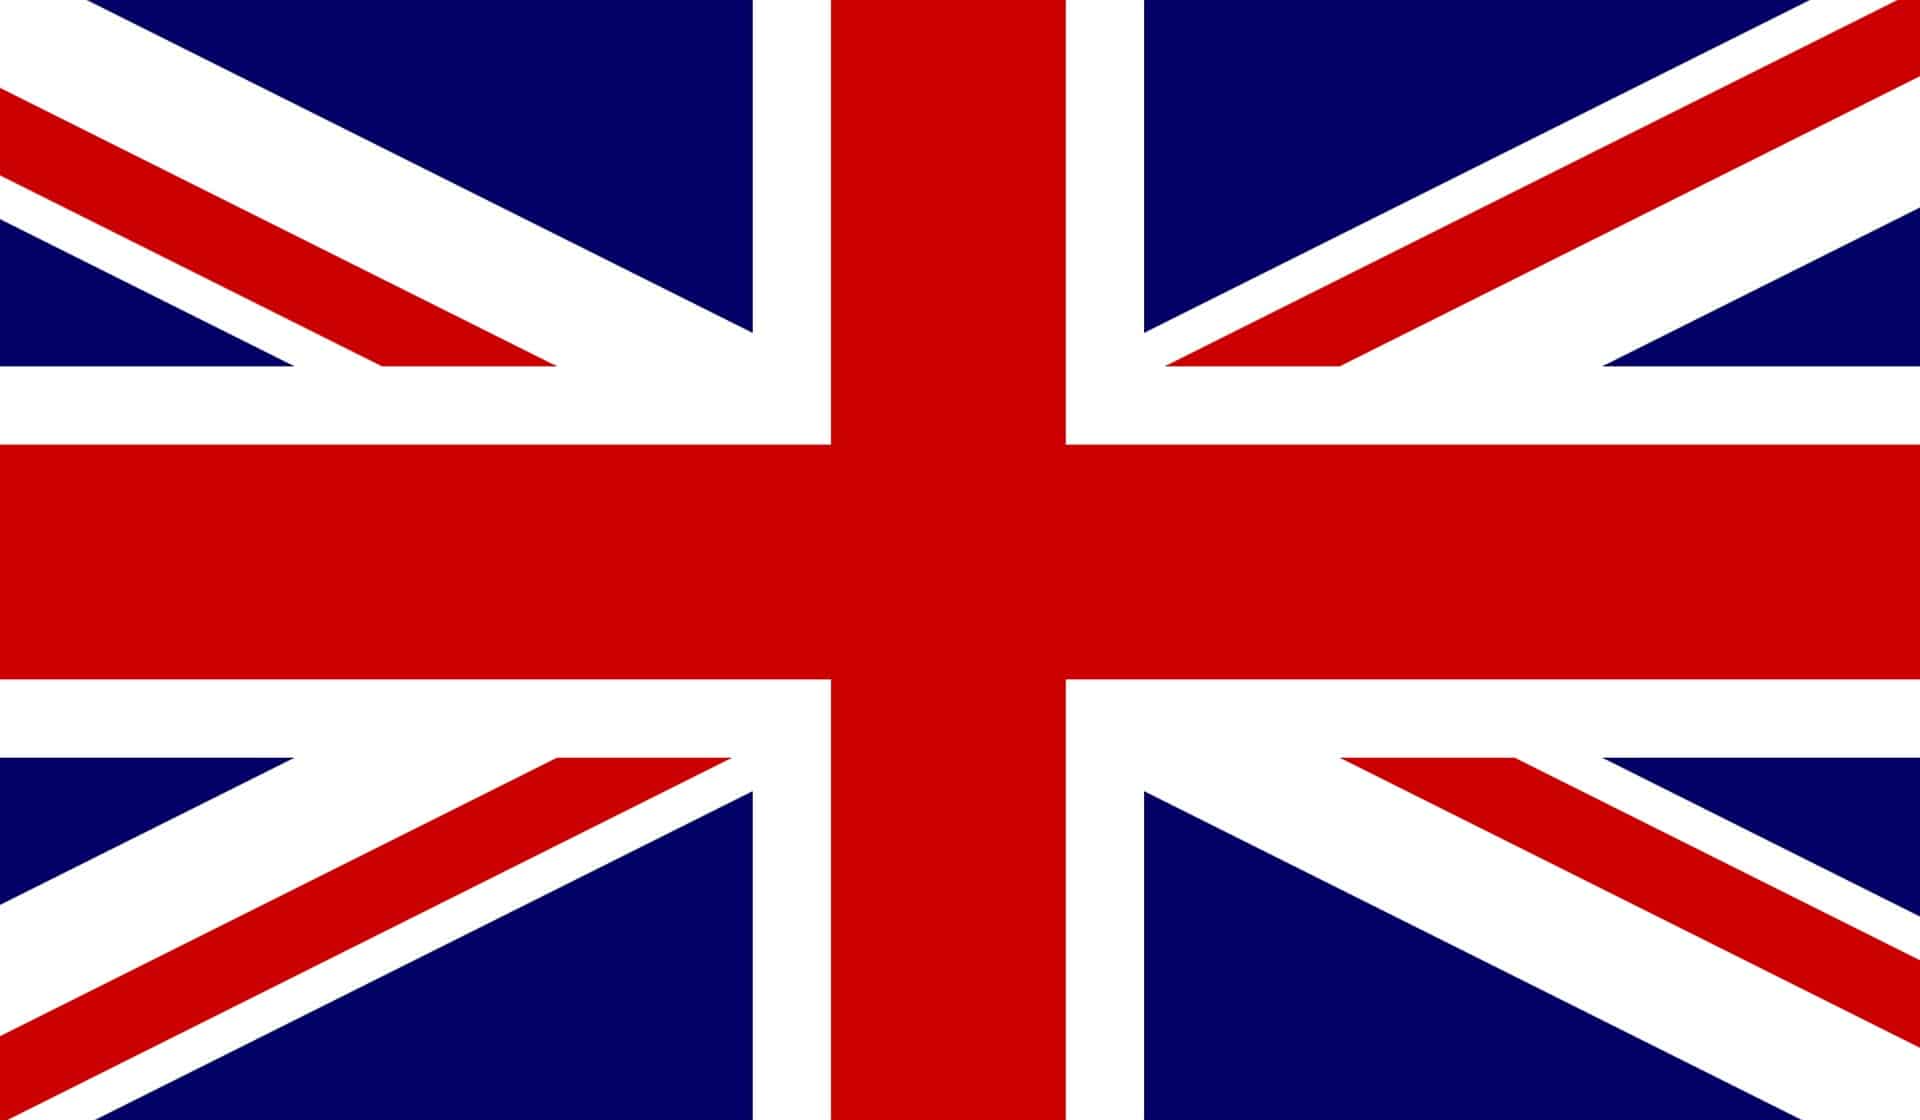 British flag - union jack